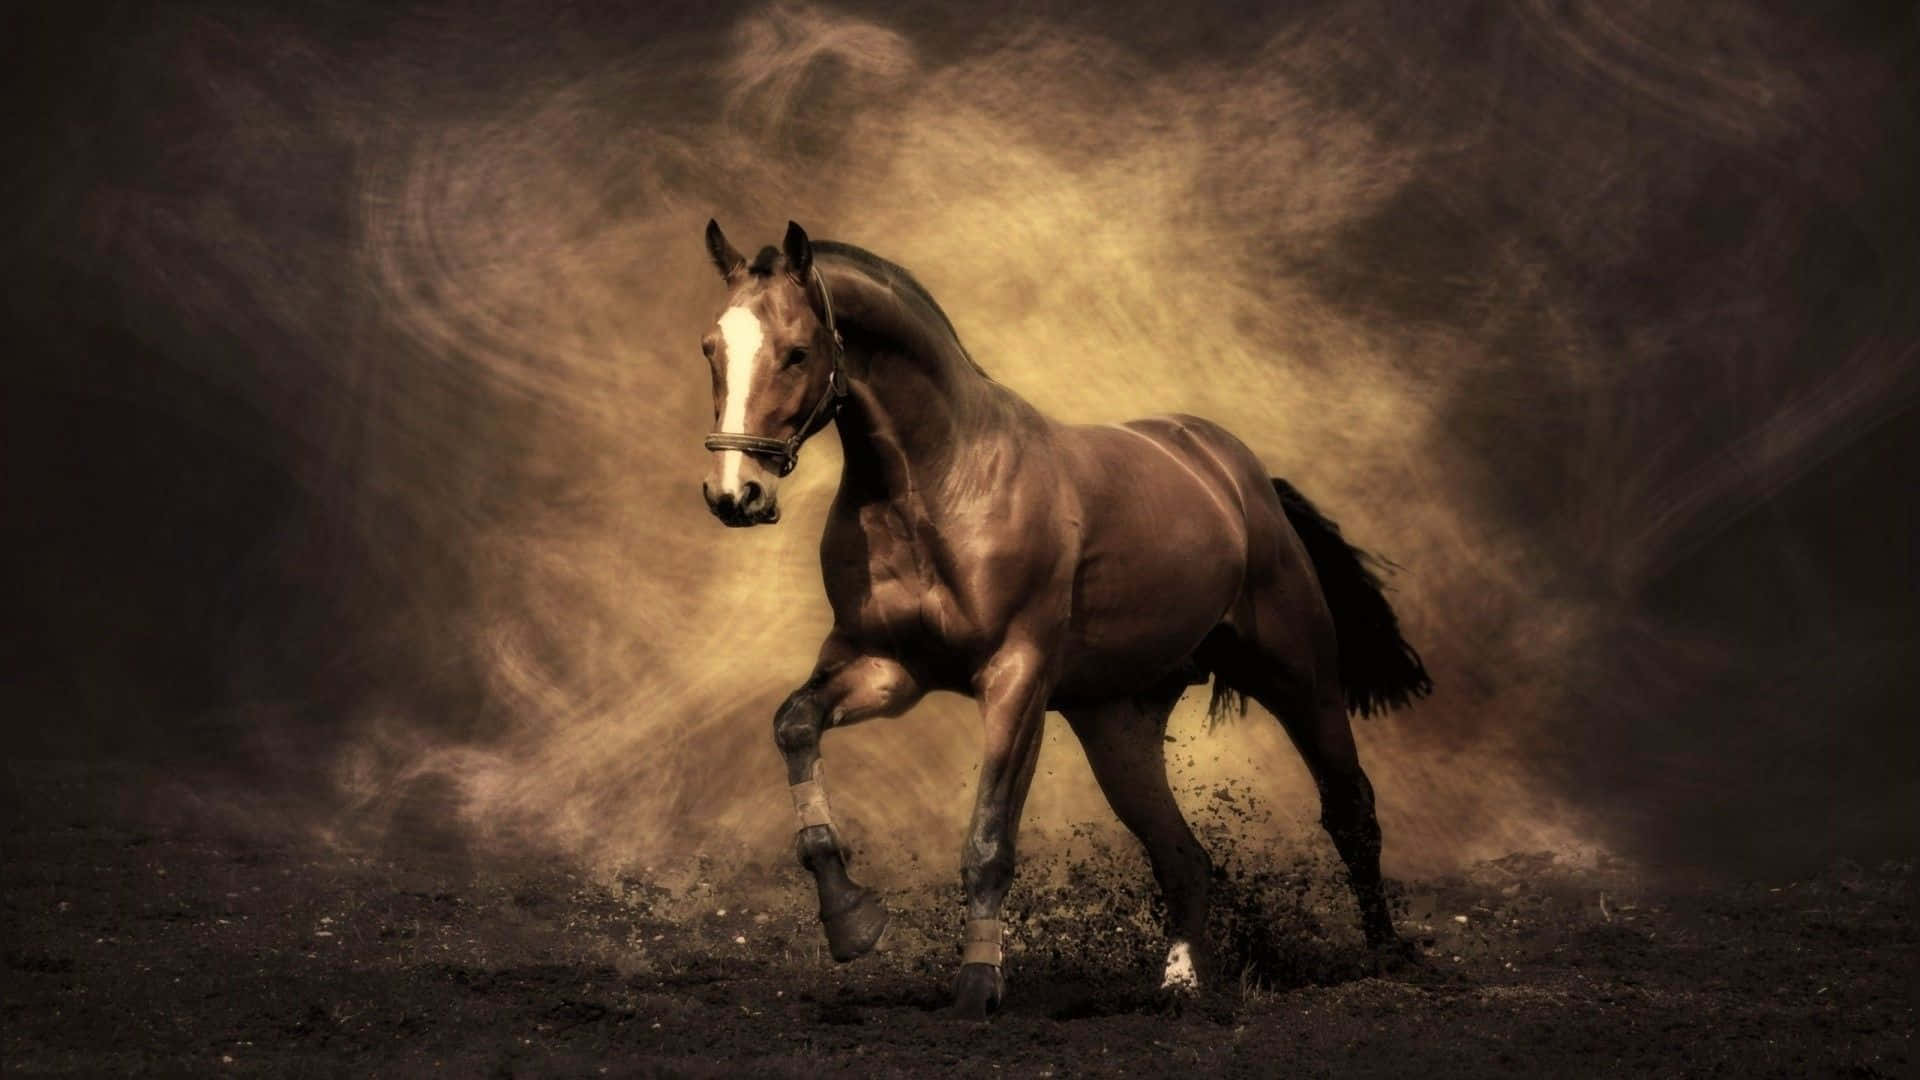 Beundraskönheten Hos Denna Fantastiska Vita Häst.